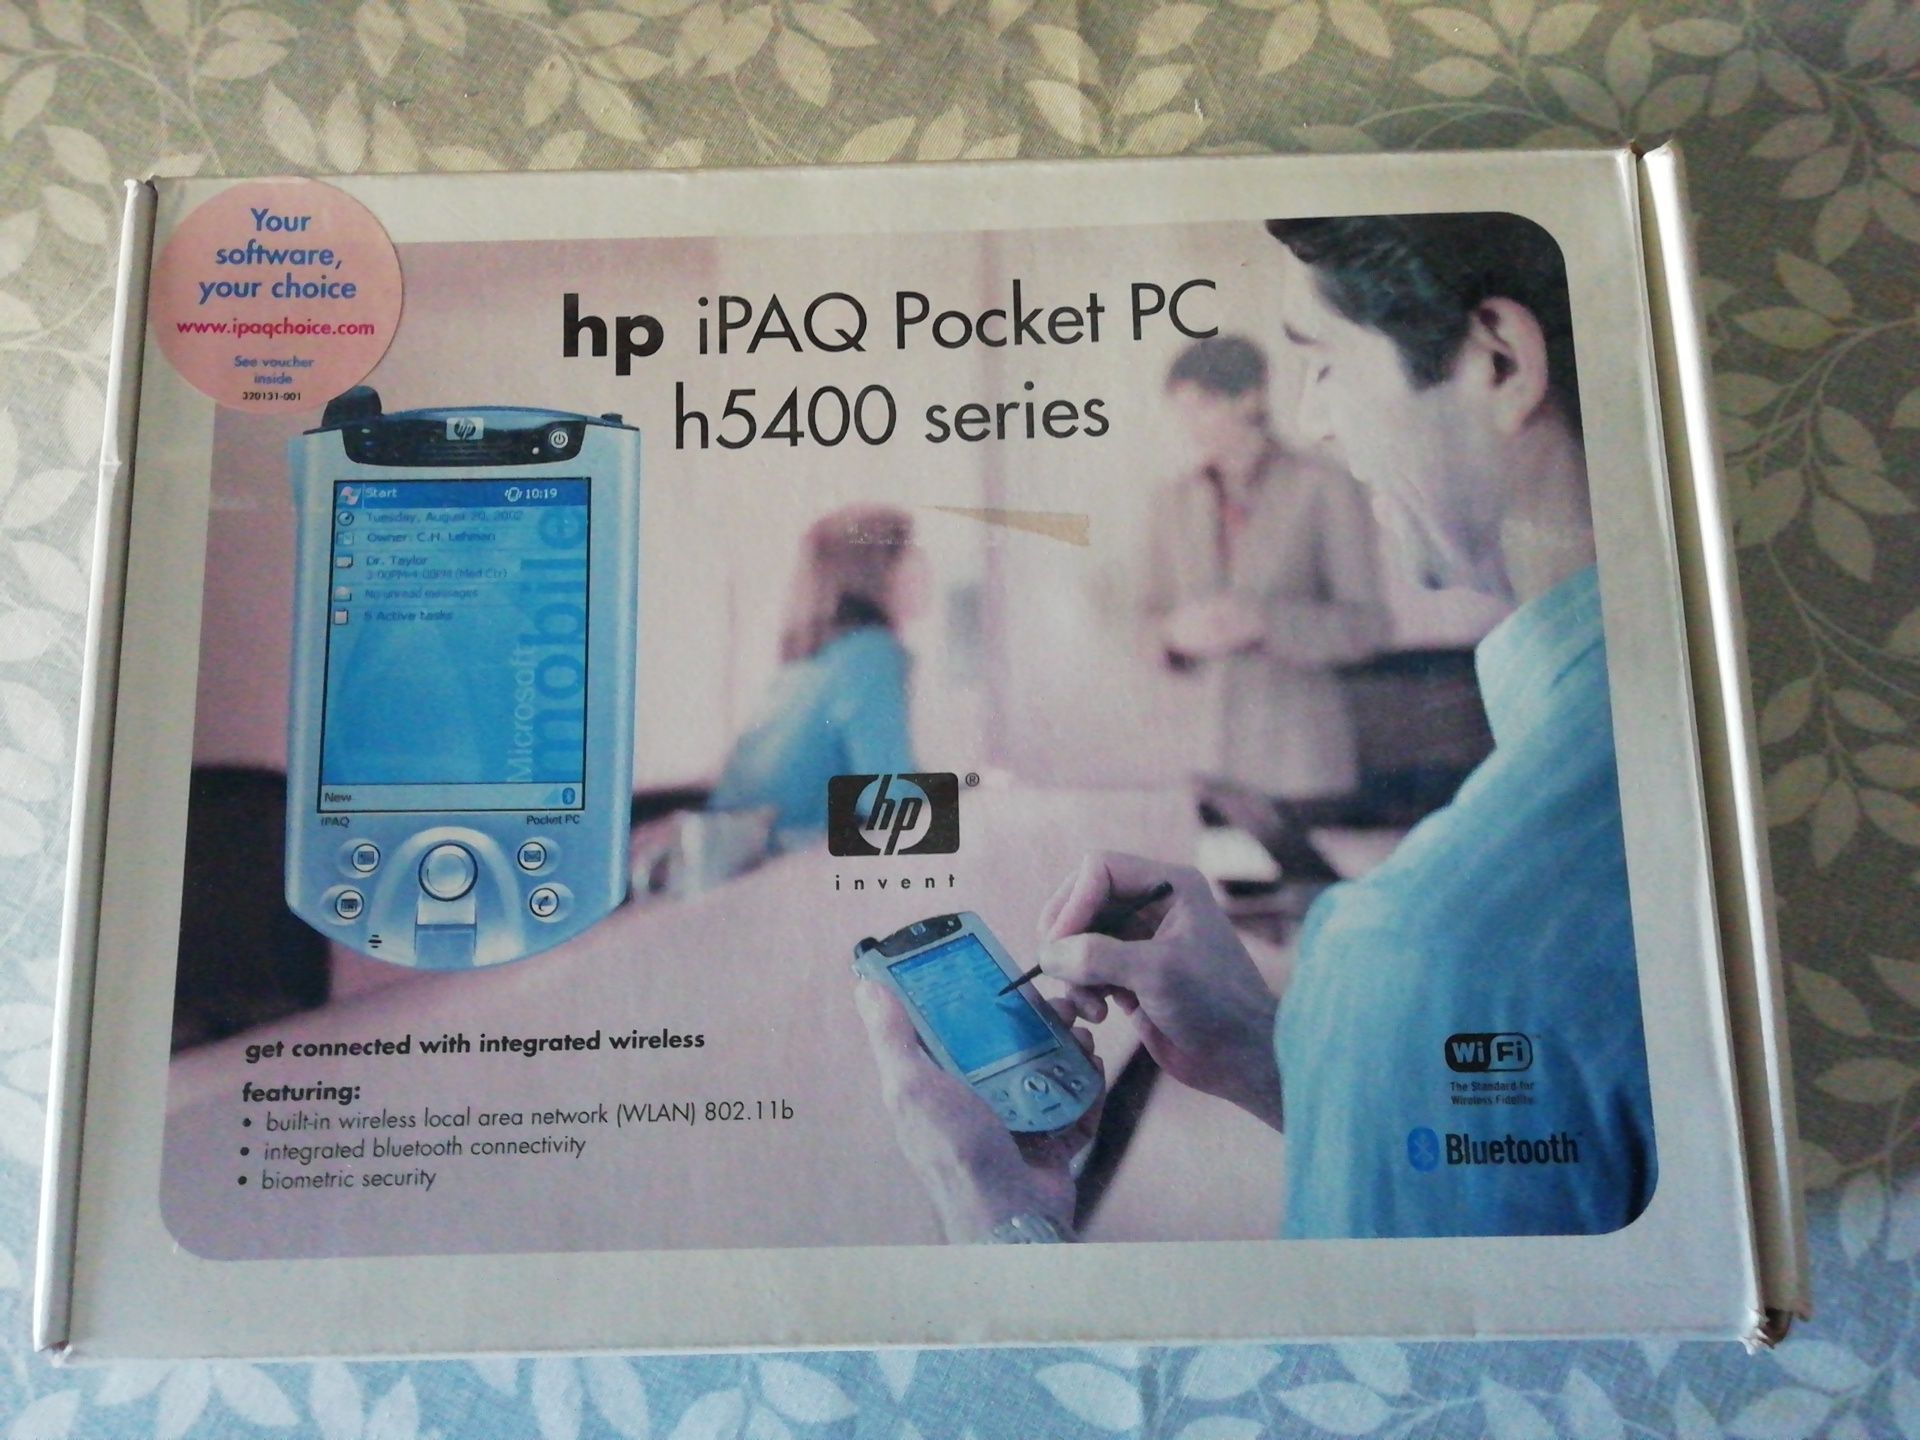 Pokect PC HP 5400